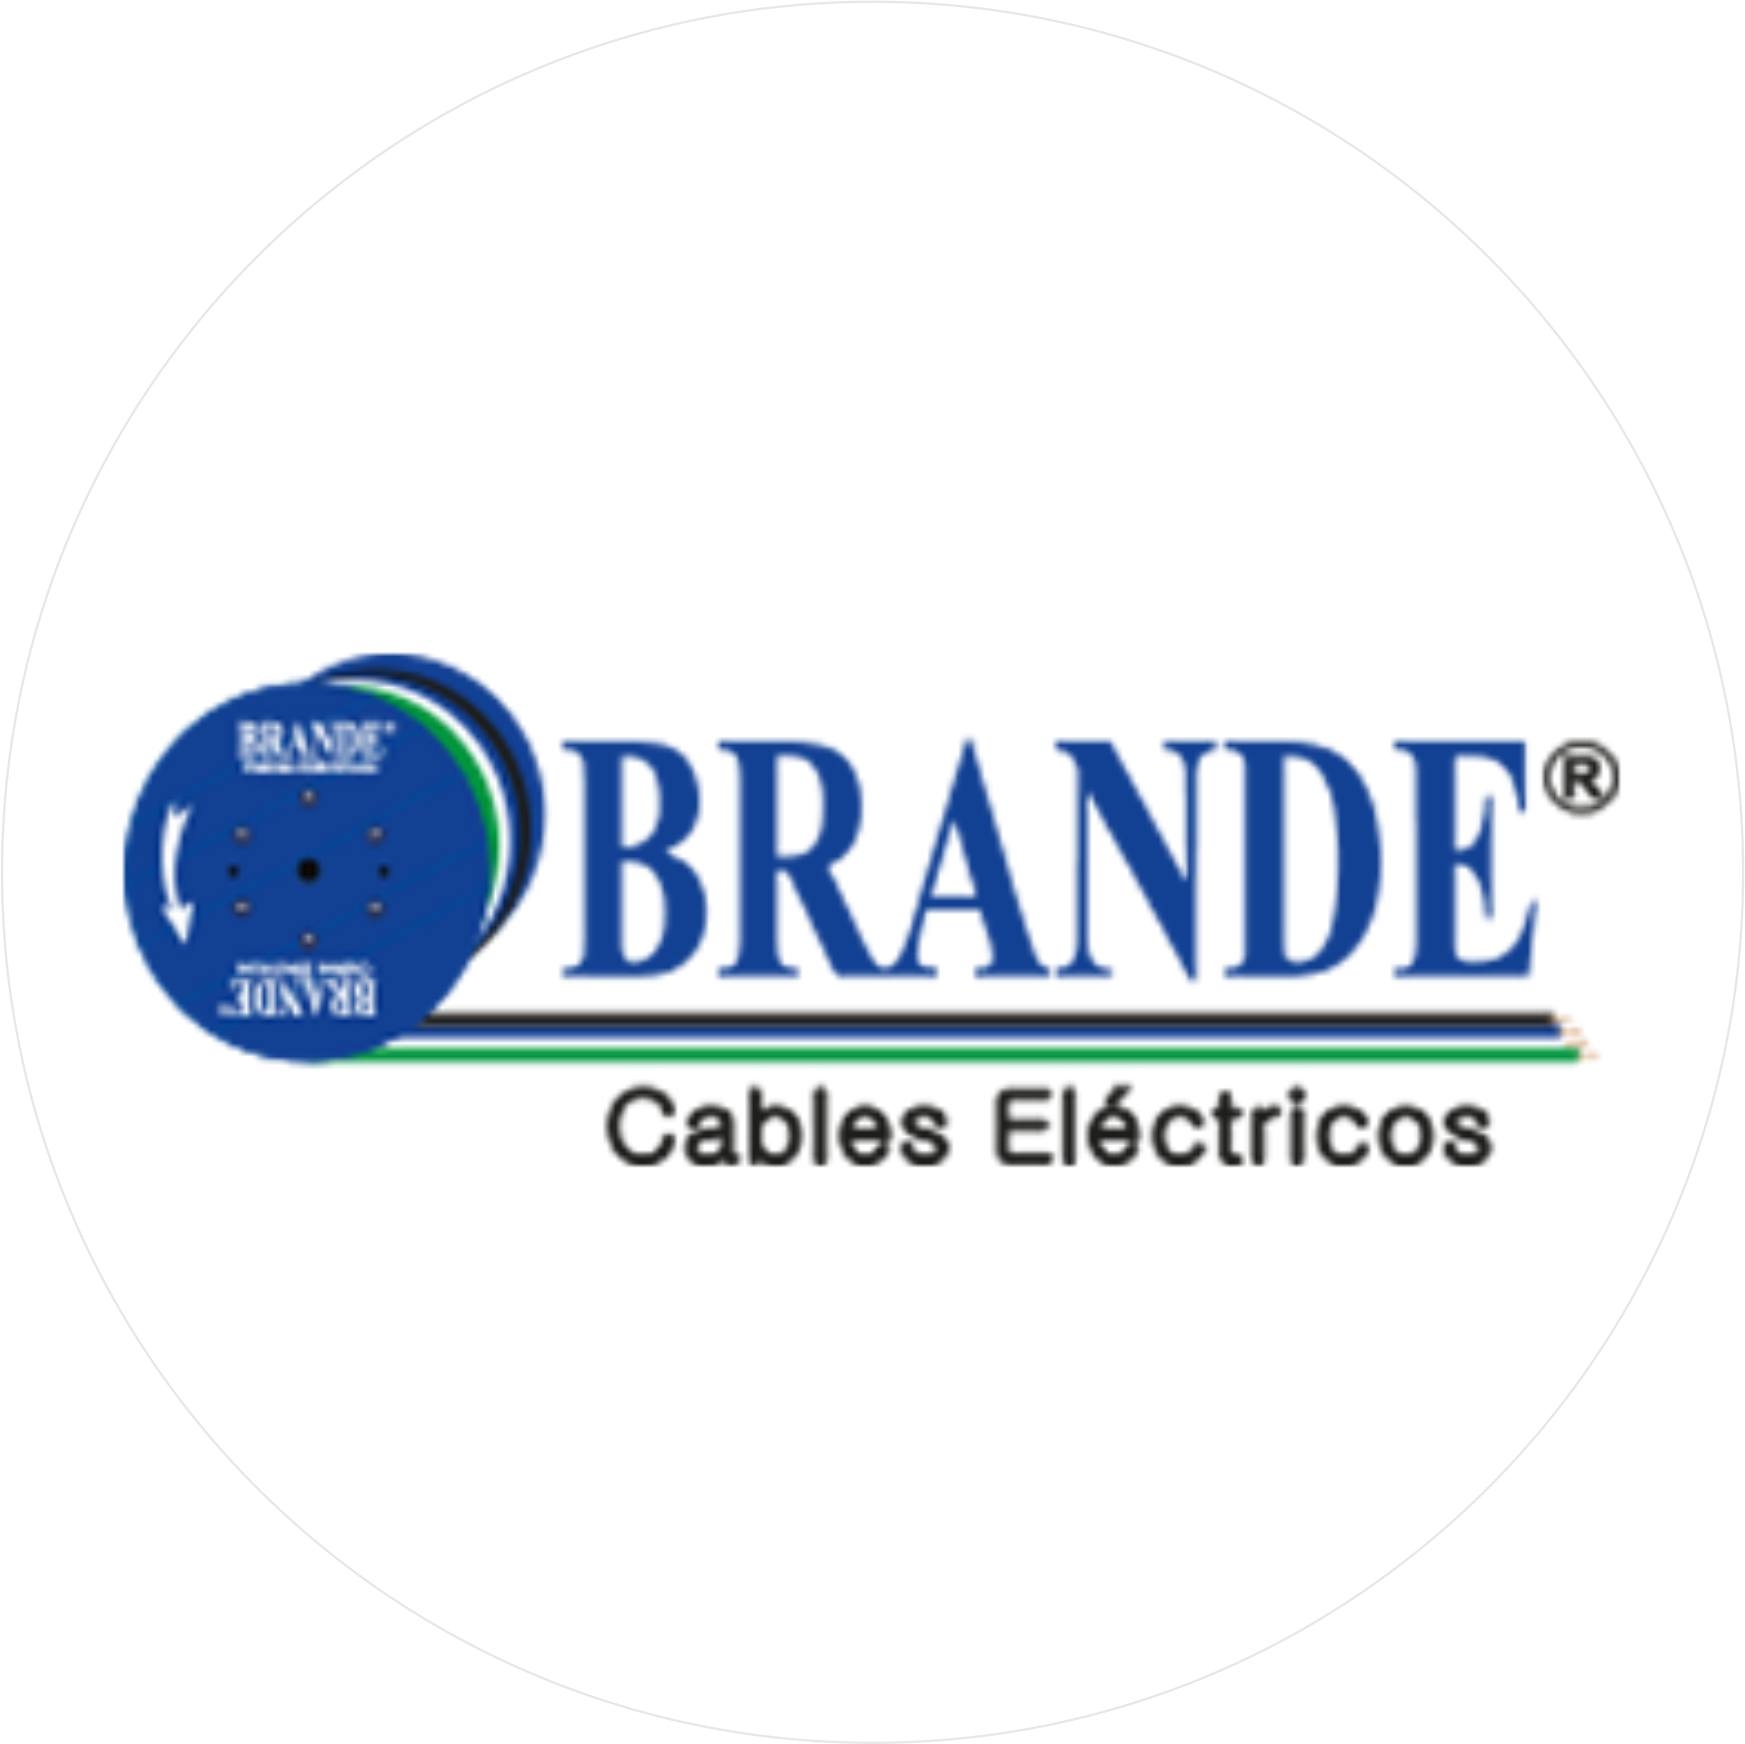 Cables Eléctricos Brande